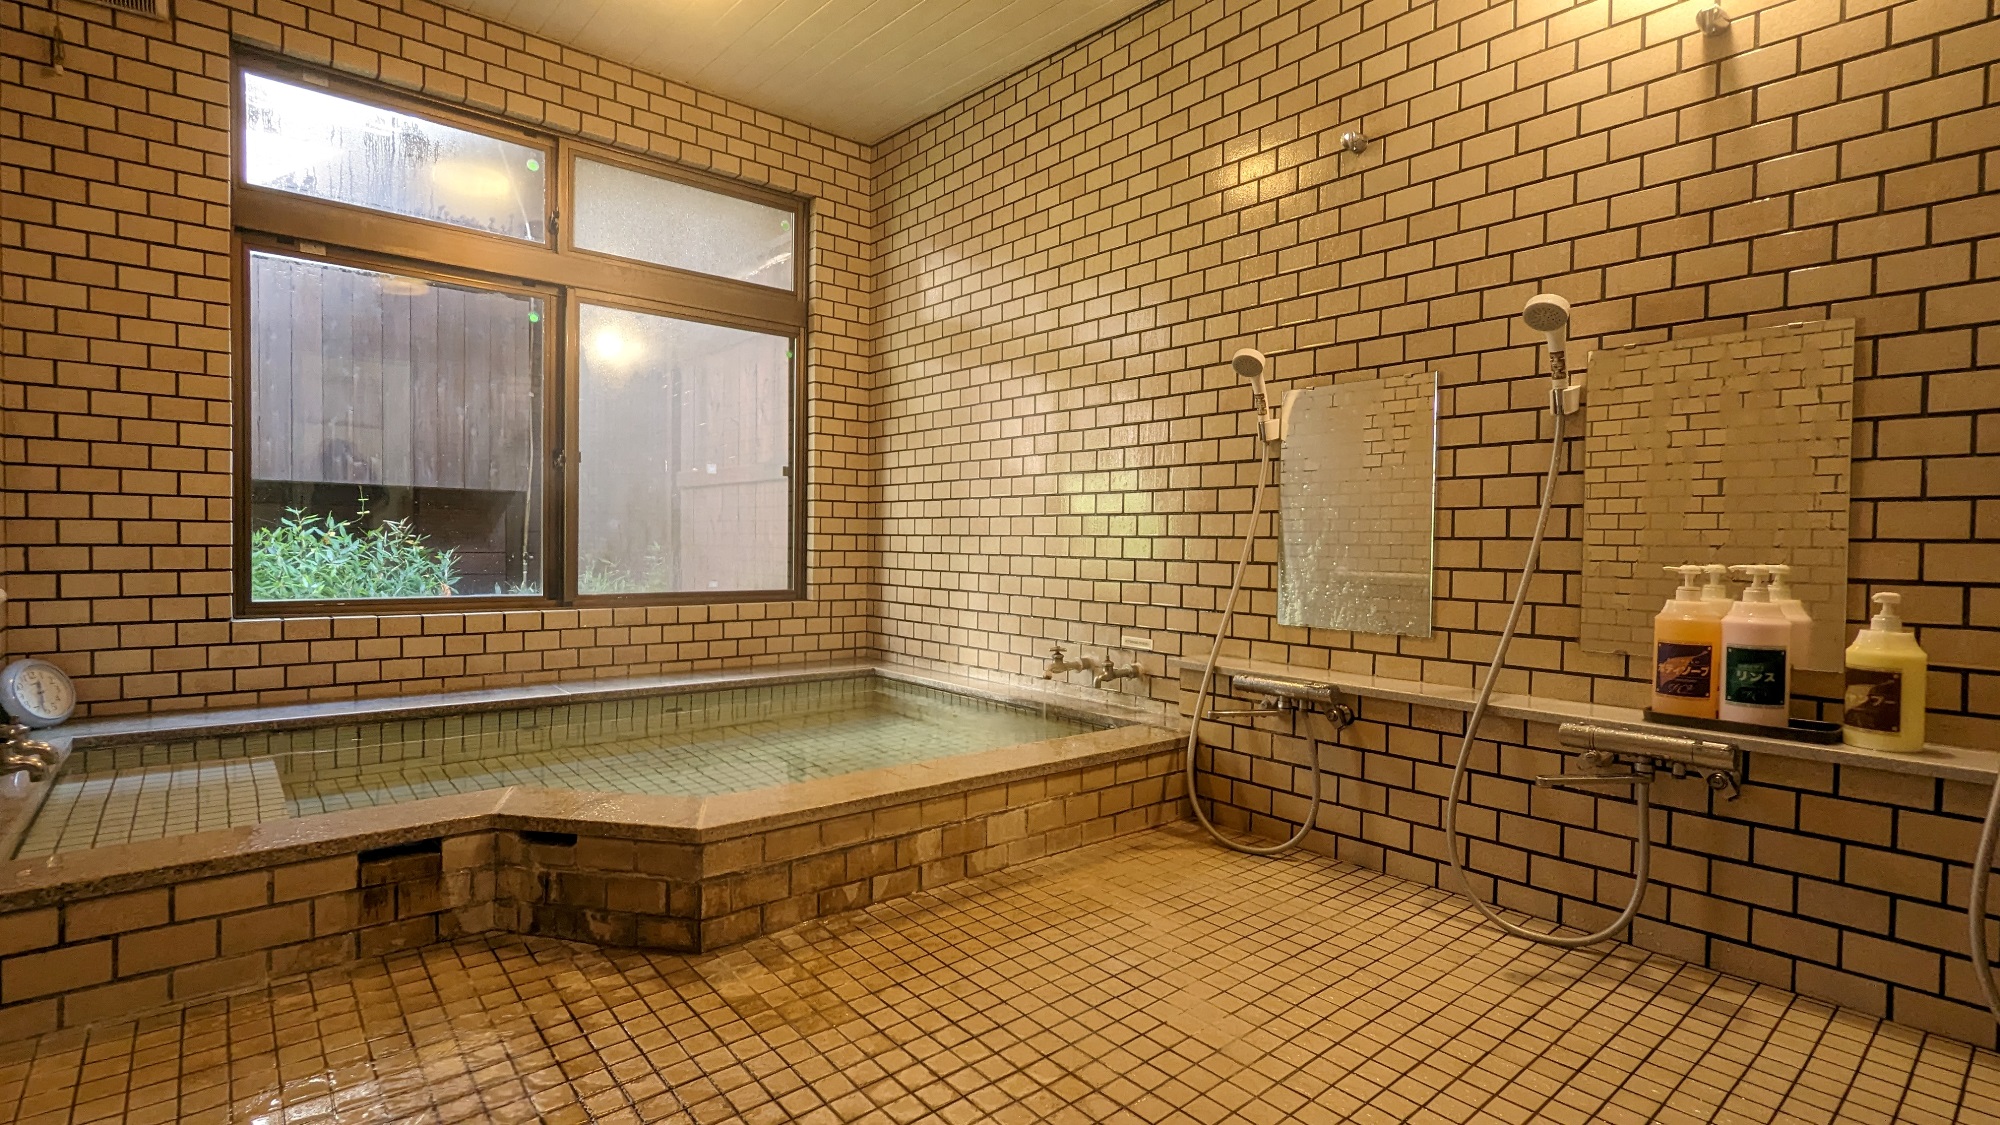 【天然温泉】貸切風呂24時間入浴可能